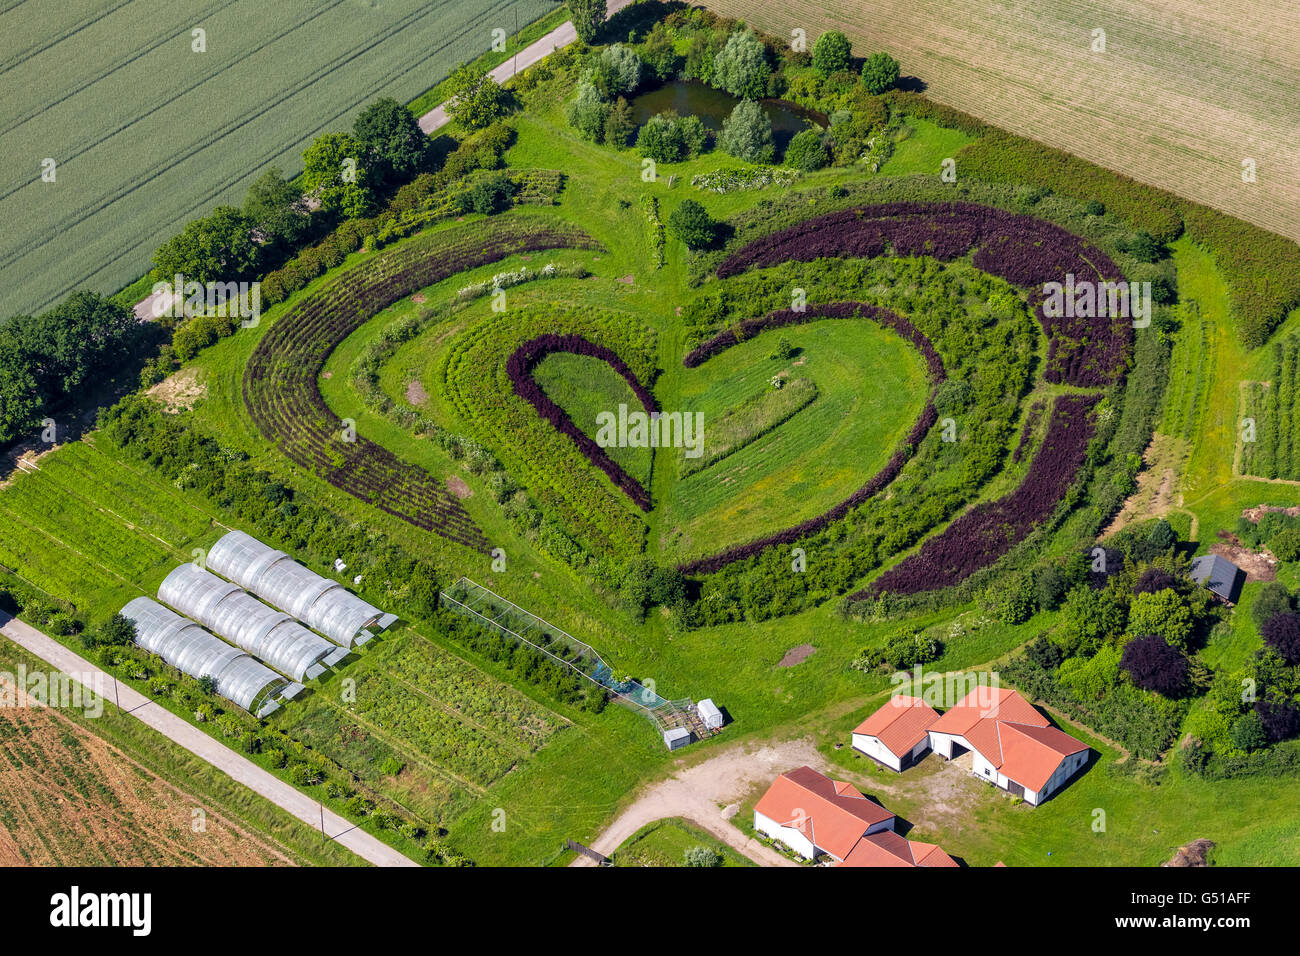 Vista aérea, corazón, empresa hortícola en Waltrop, árbol y escuela bush en forma de corazón, con forma de corazón, corazón Waltrop, Foto de stock